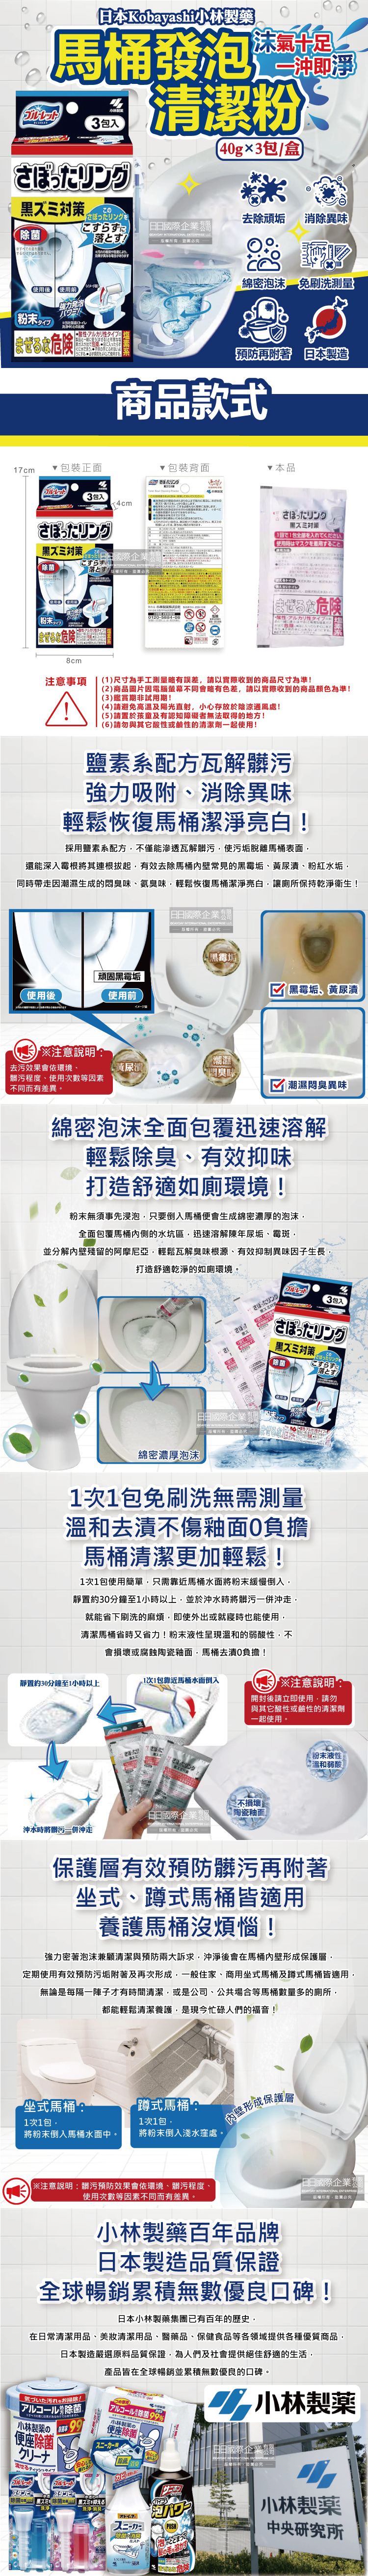 (清潔-馬桶)日本小林製藥-馬桶去汙除垢泡沫清潔粉(40gx3包)盒裝介紹圖